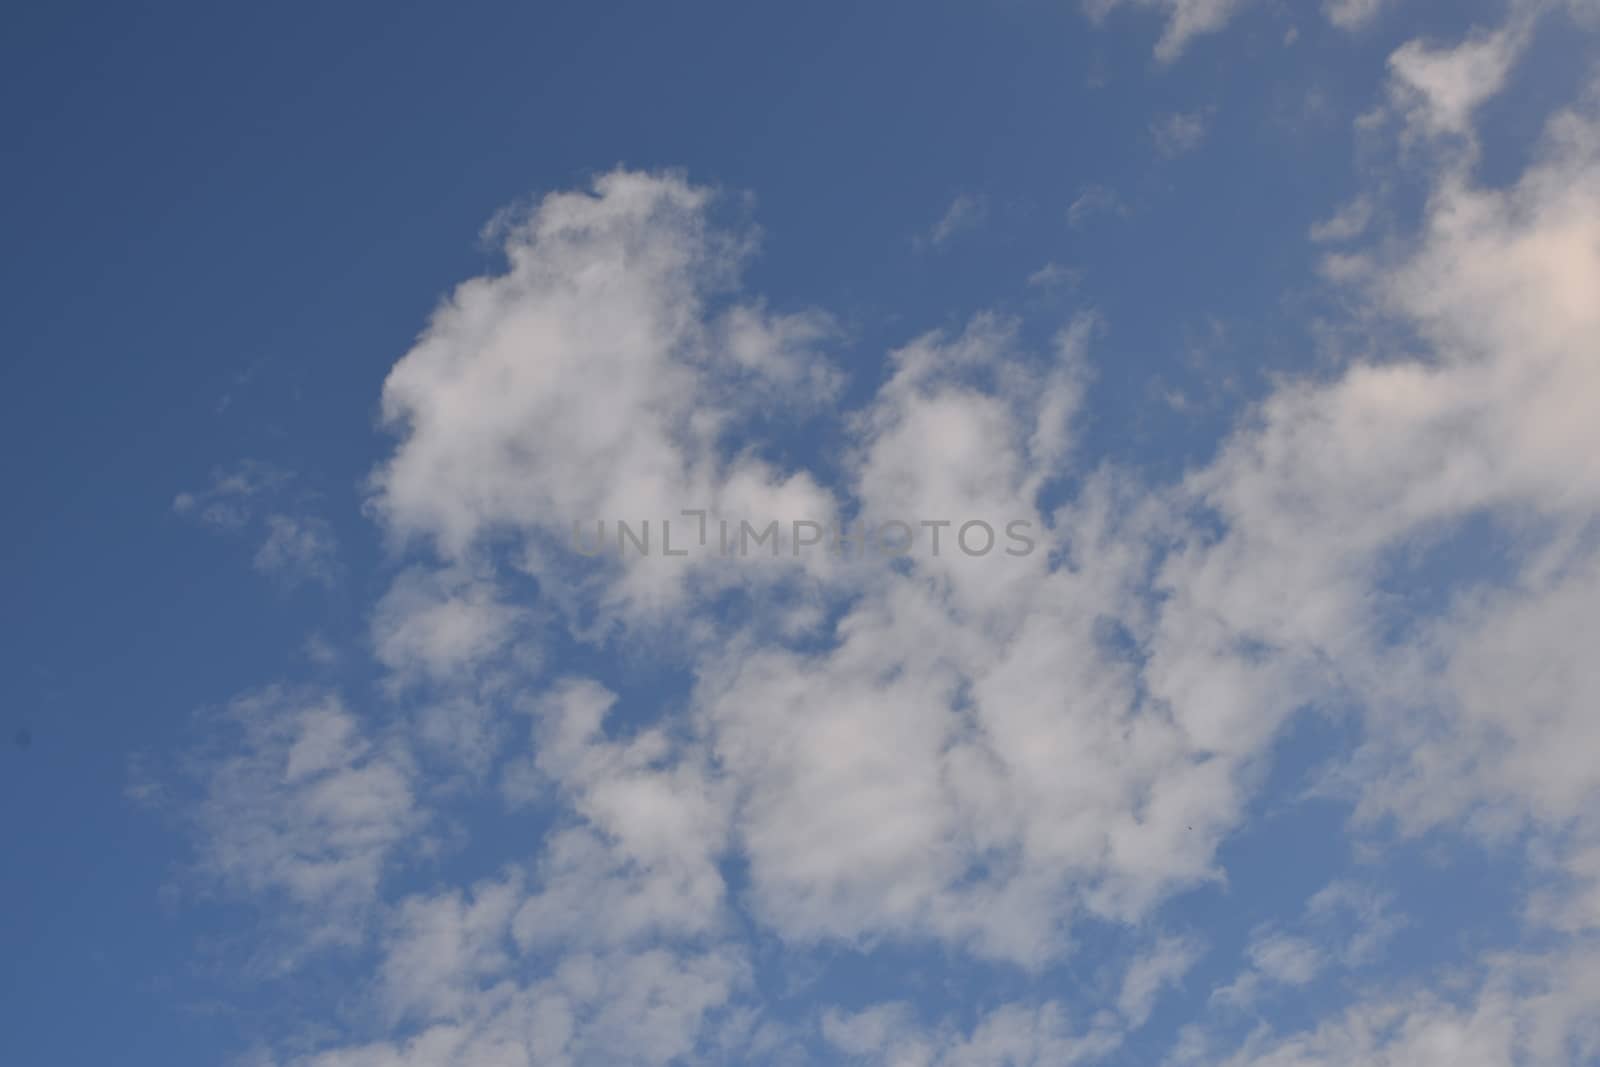 White Clouds in a clear blue sky